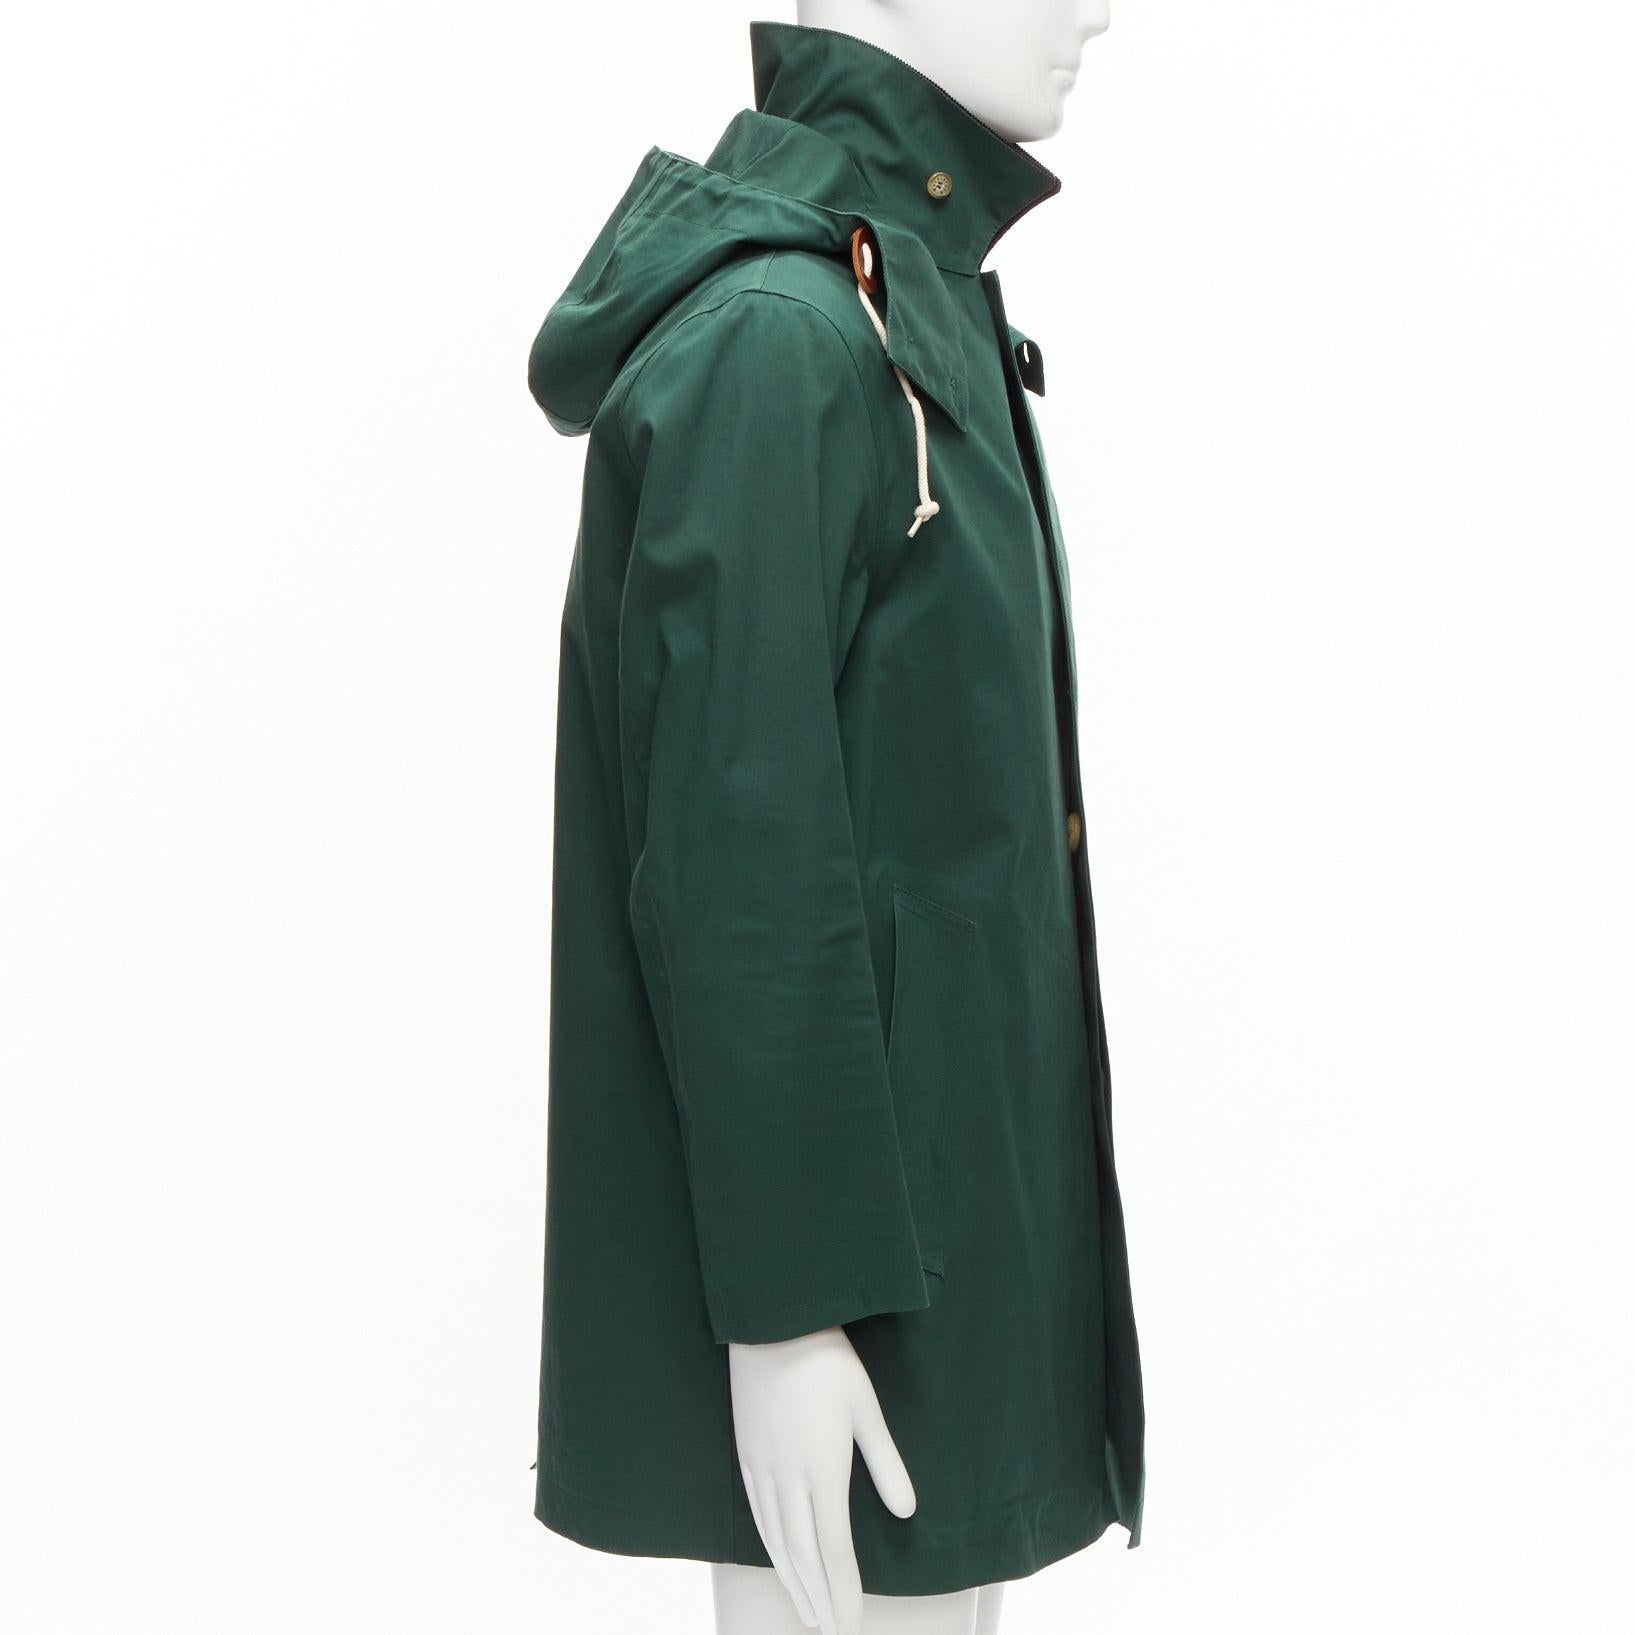 Men's MACKINTOSH Harris Tweed green wool tweed lined hooded parka coat UK38 M